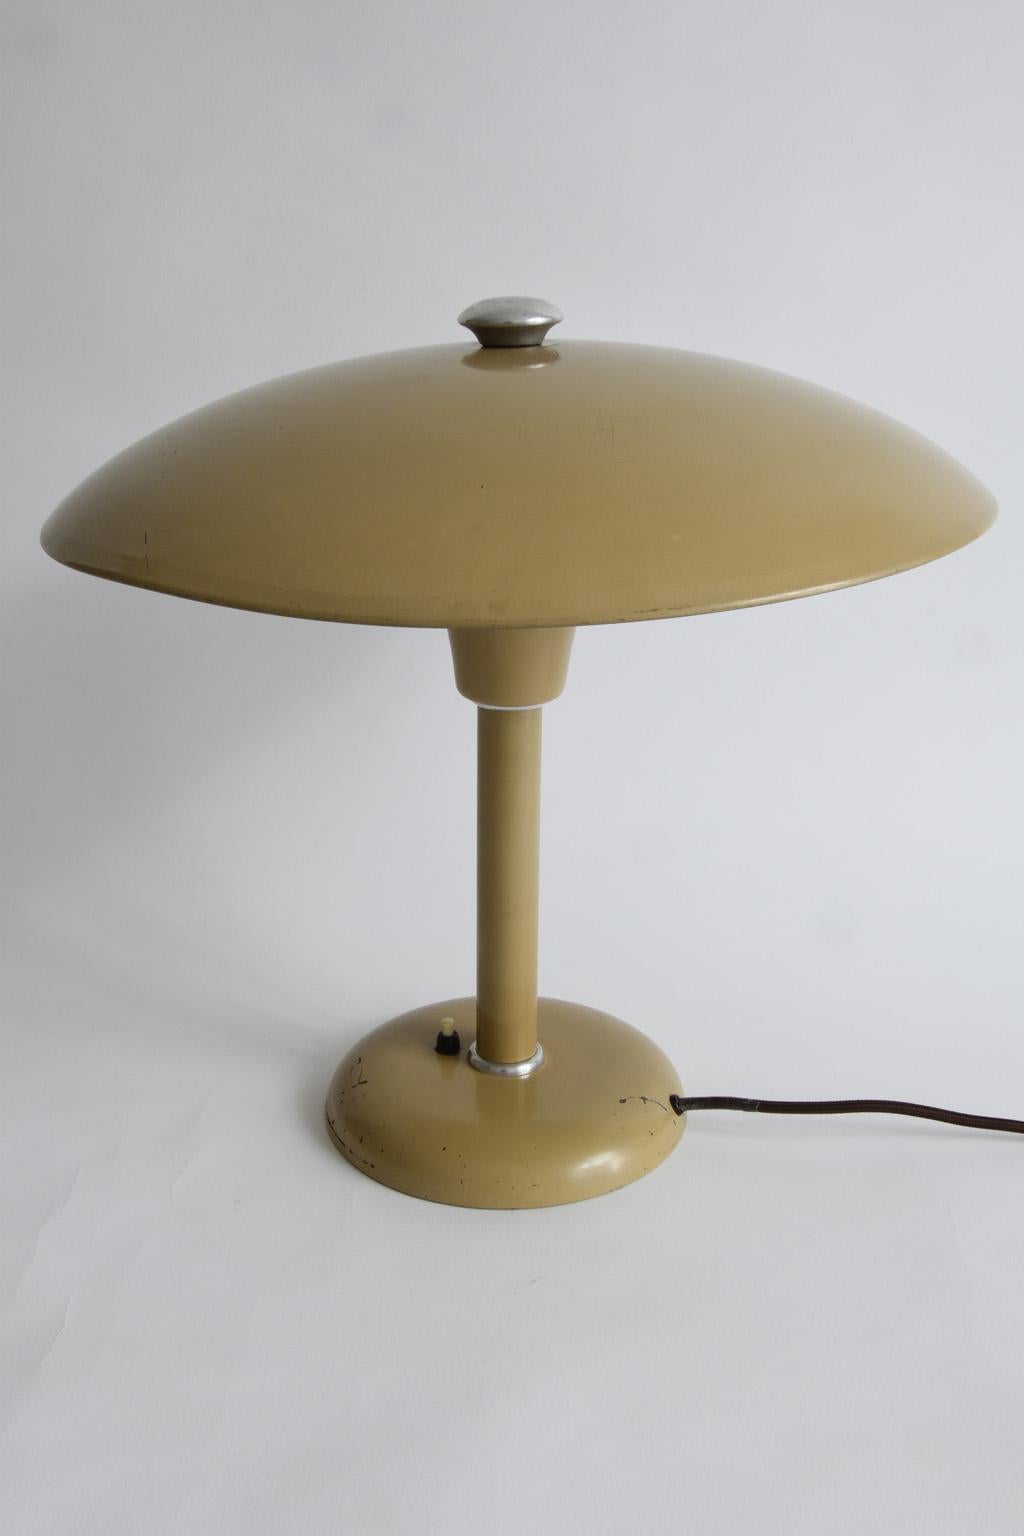 Table lamp by Max Schumacher for Werner Schröder Bauhaus, Germany 1934, beige.